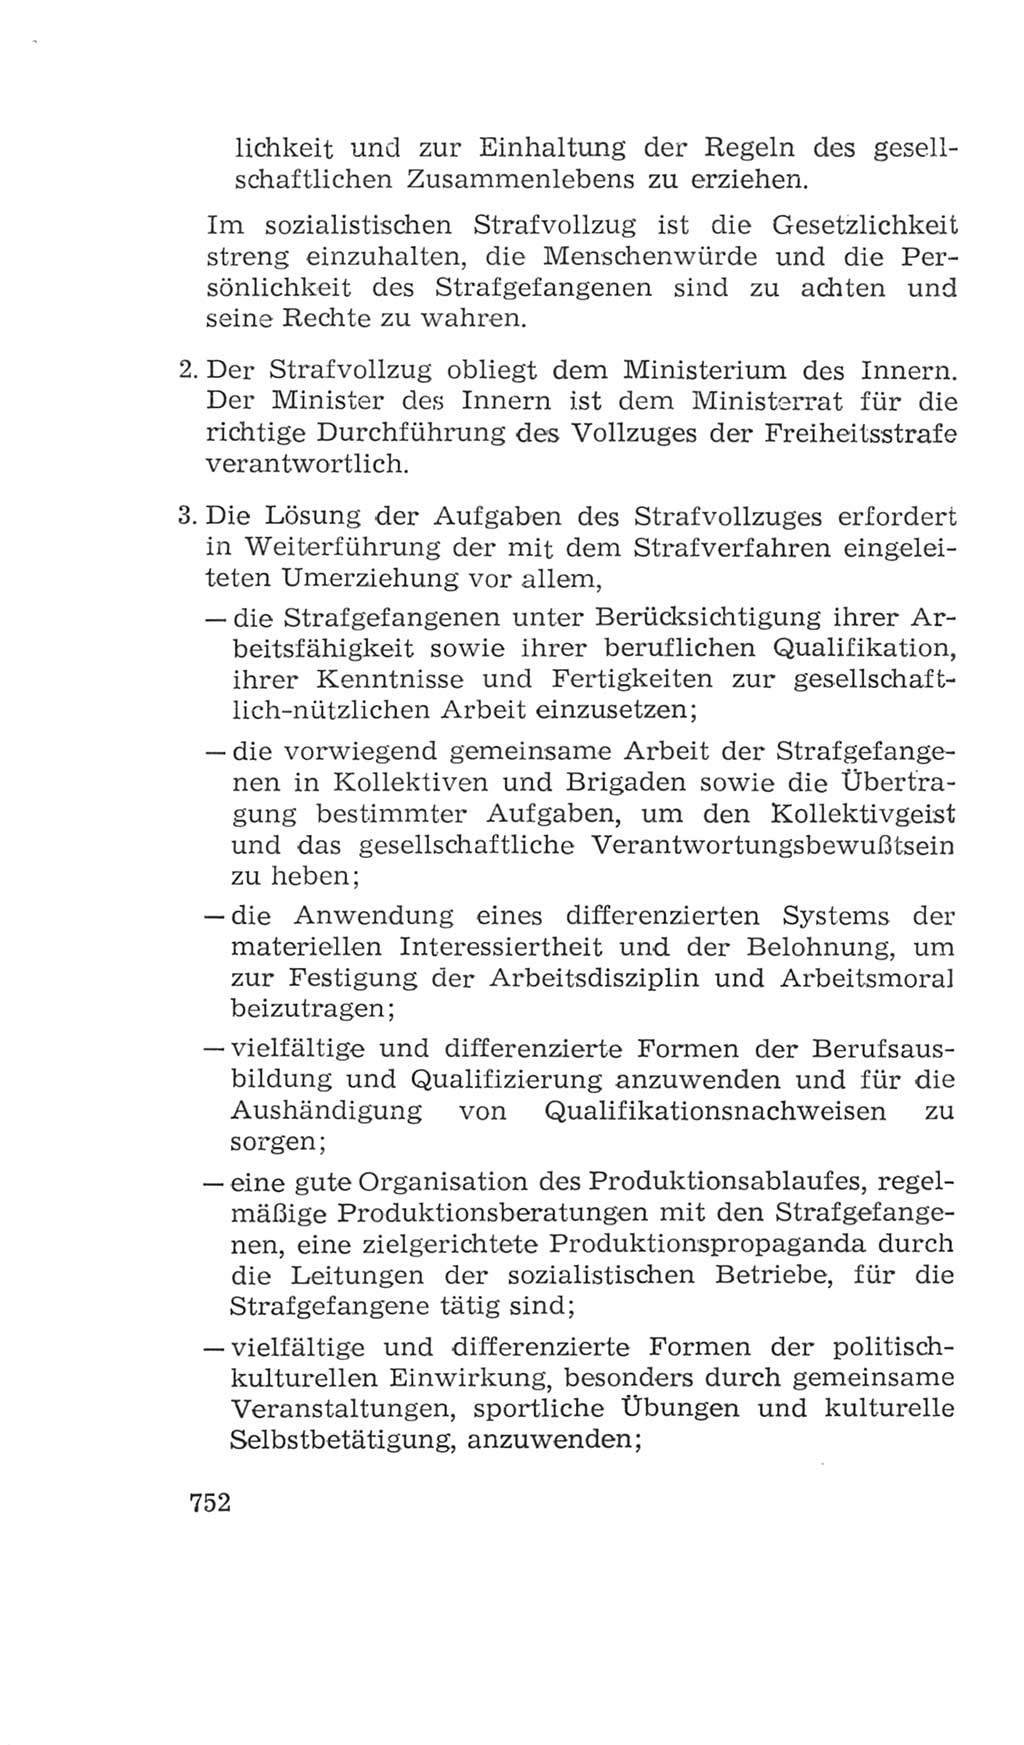 Volkskammer (VK) der Deutschen Demokratischen Republik (DDR), 4. Wahlperiode 1963-1967, Seite 752 (VK. DDR 4. WP. 1963-1967, S. 752)